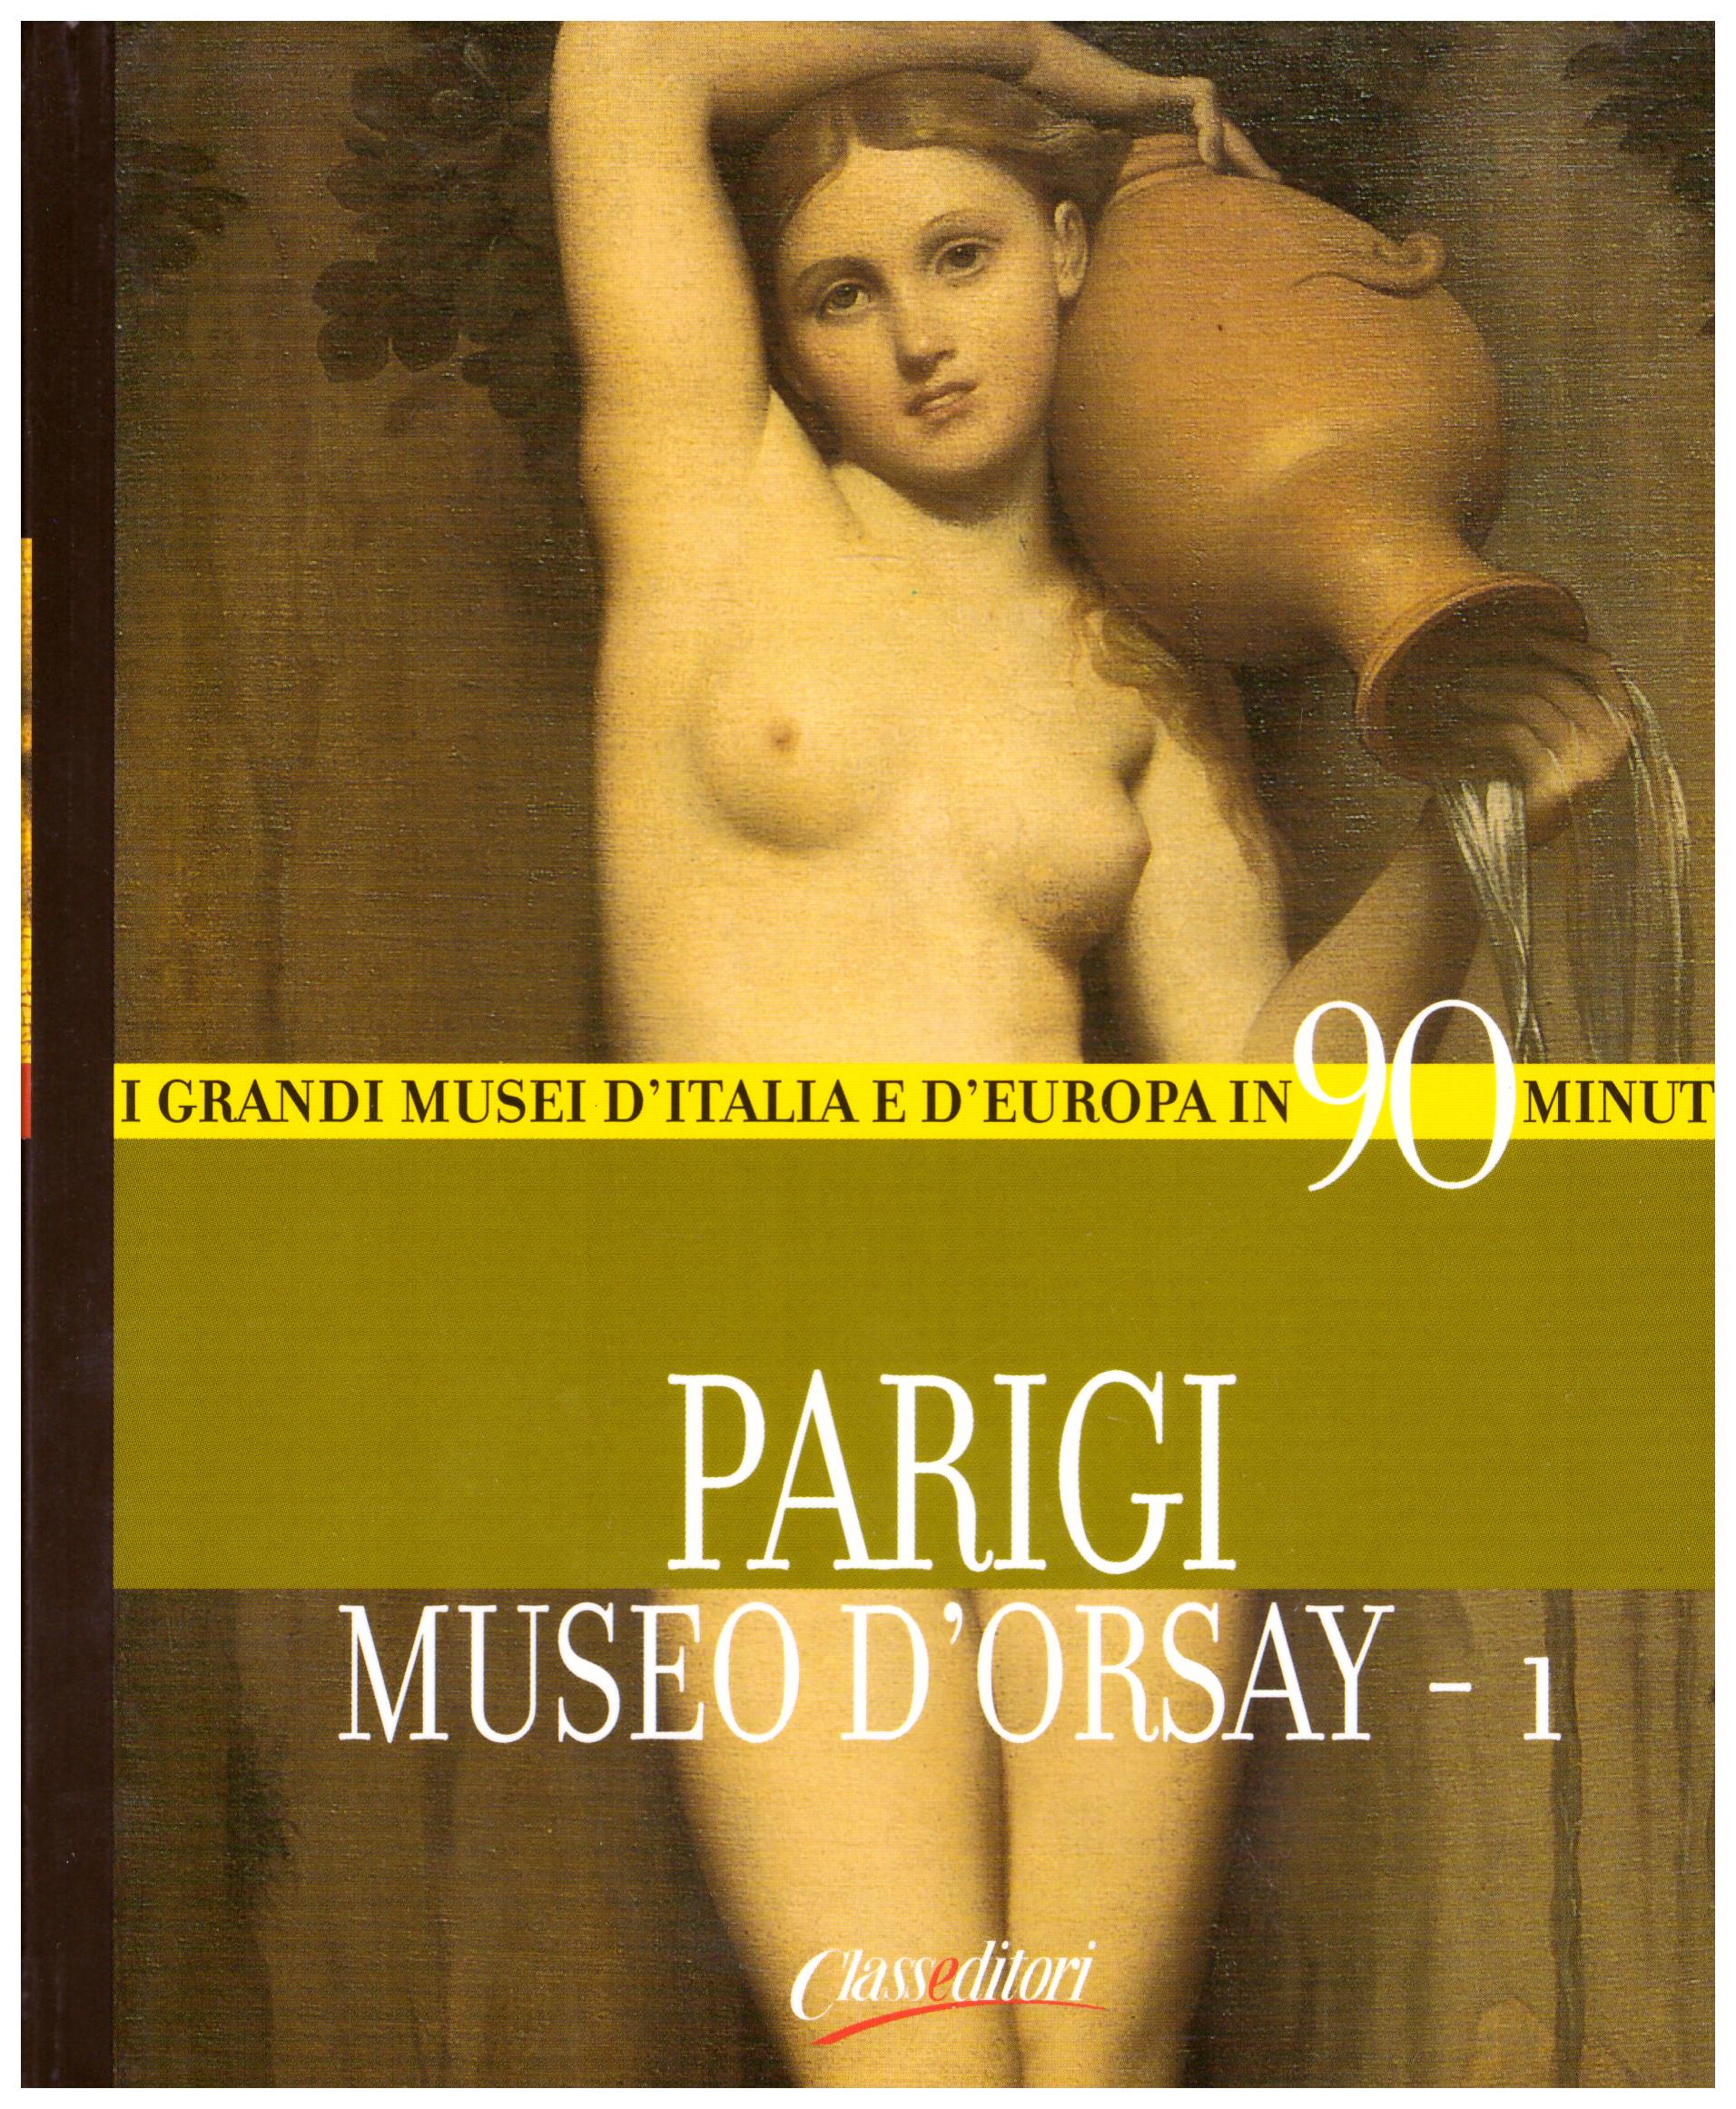 Titolo: I grandi musei d'italia e d'Europa in 90 minuti, Parigi Museo d'Orsay-1 Autore : AA.VV.  Editore: class editori